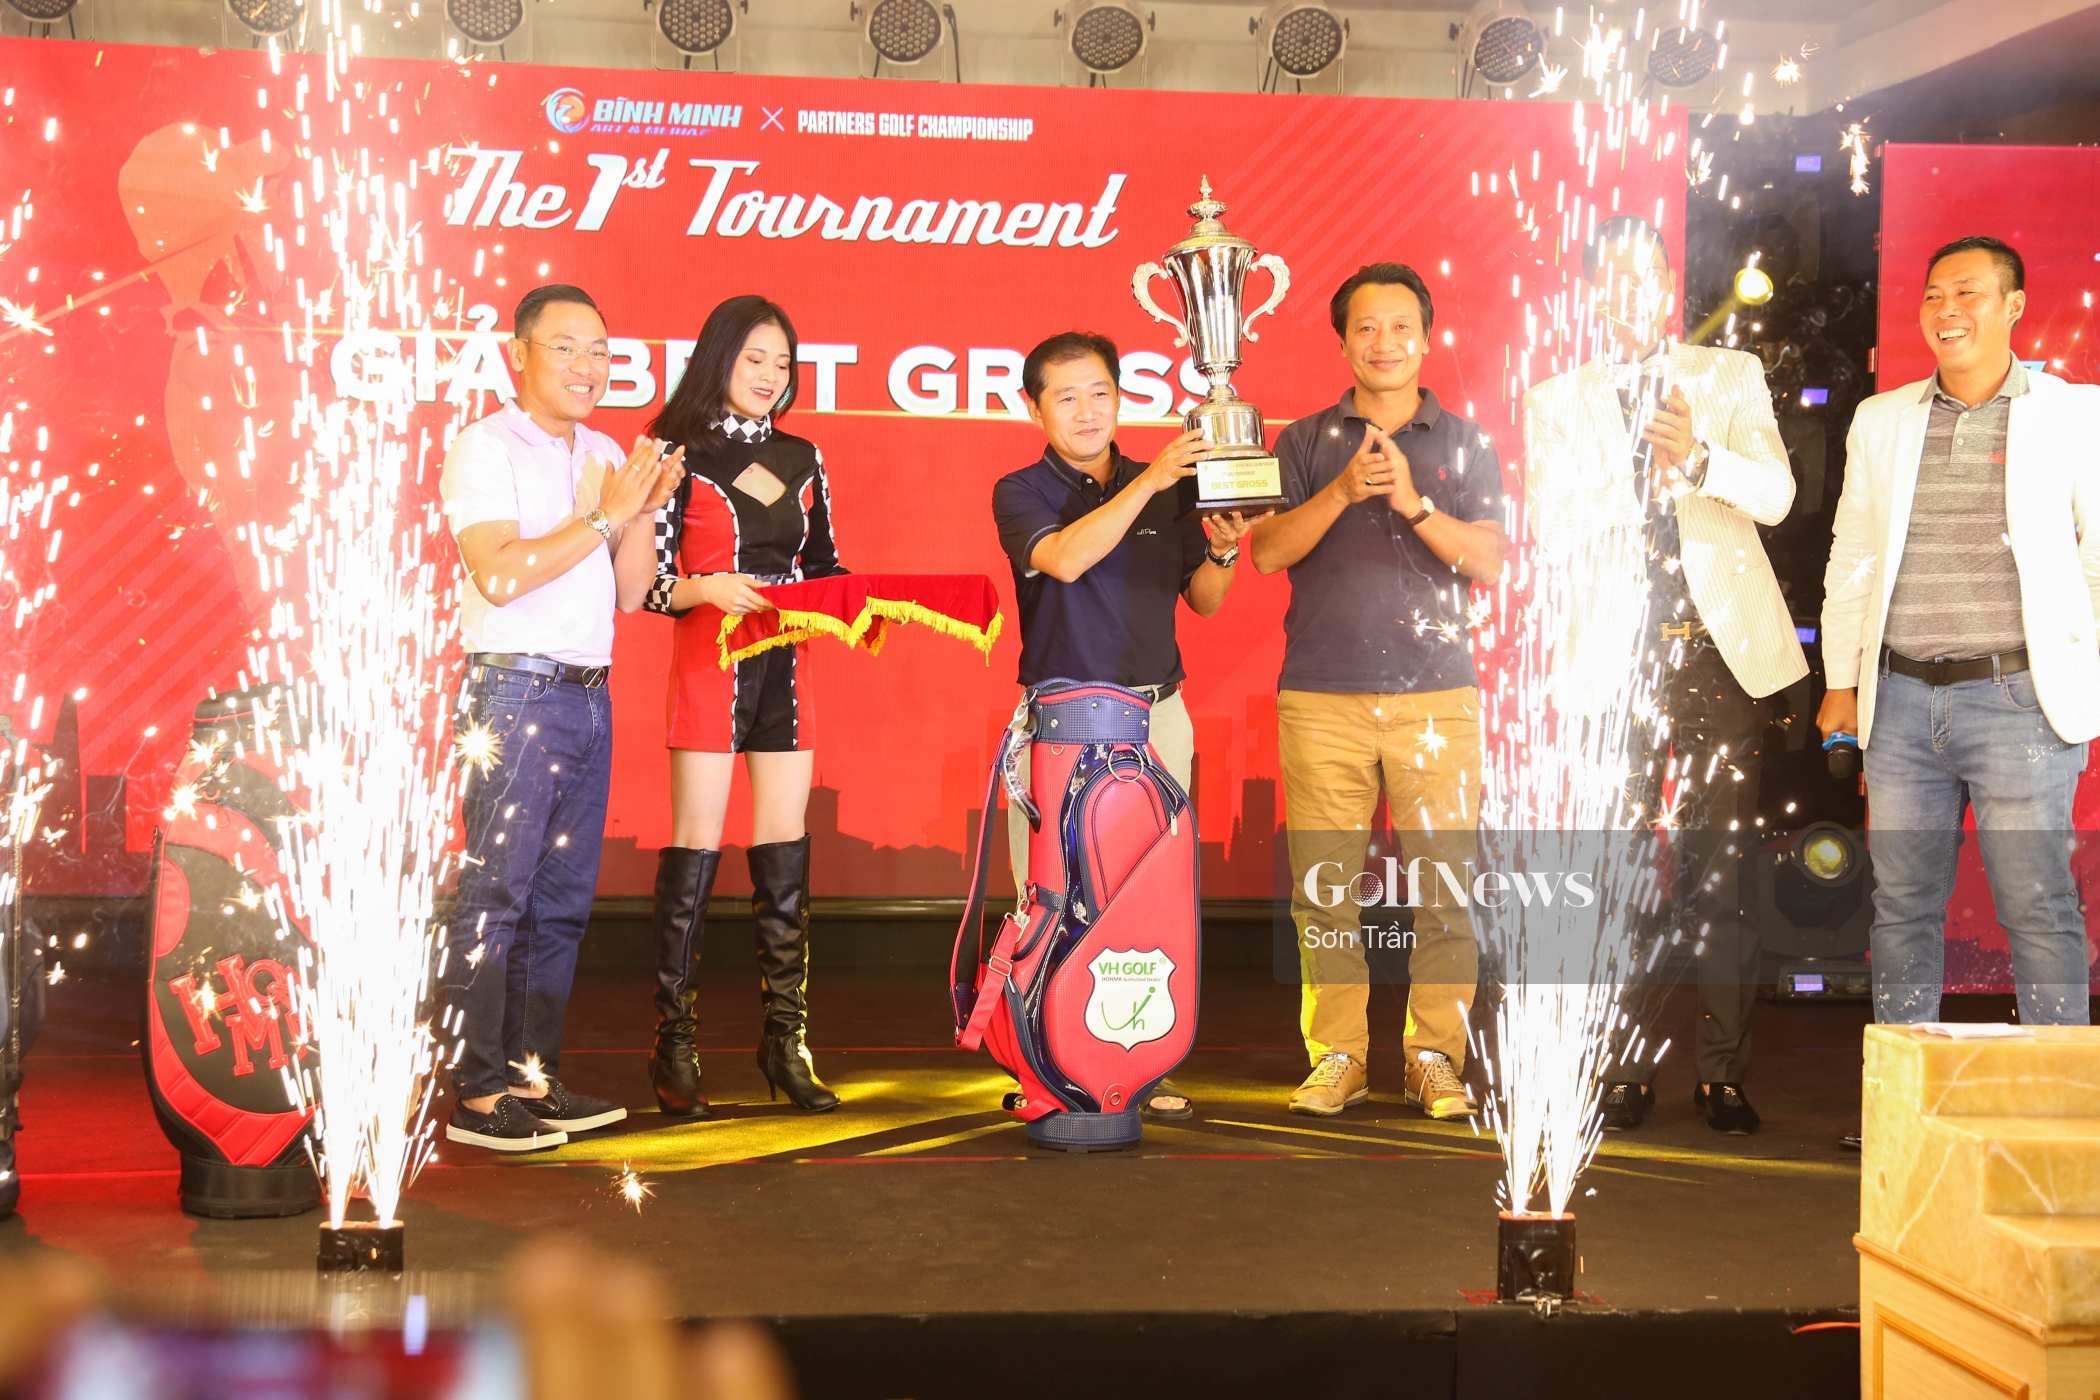 Andrew Hùng Phạm giành Best Gross tại Giải Golf BM & Partners Championship 1st Tournament